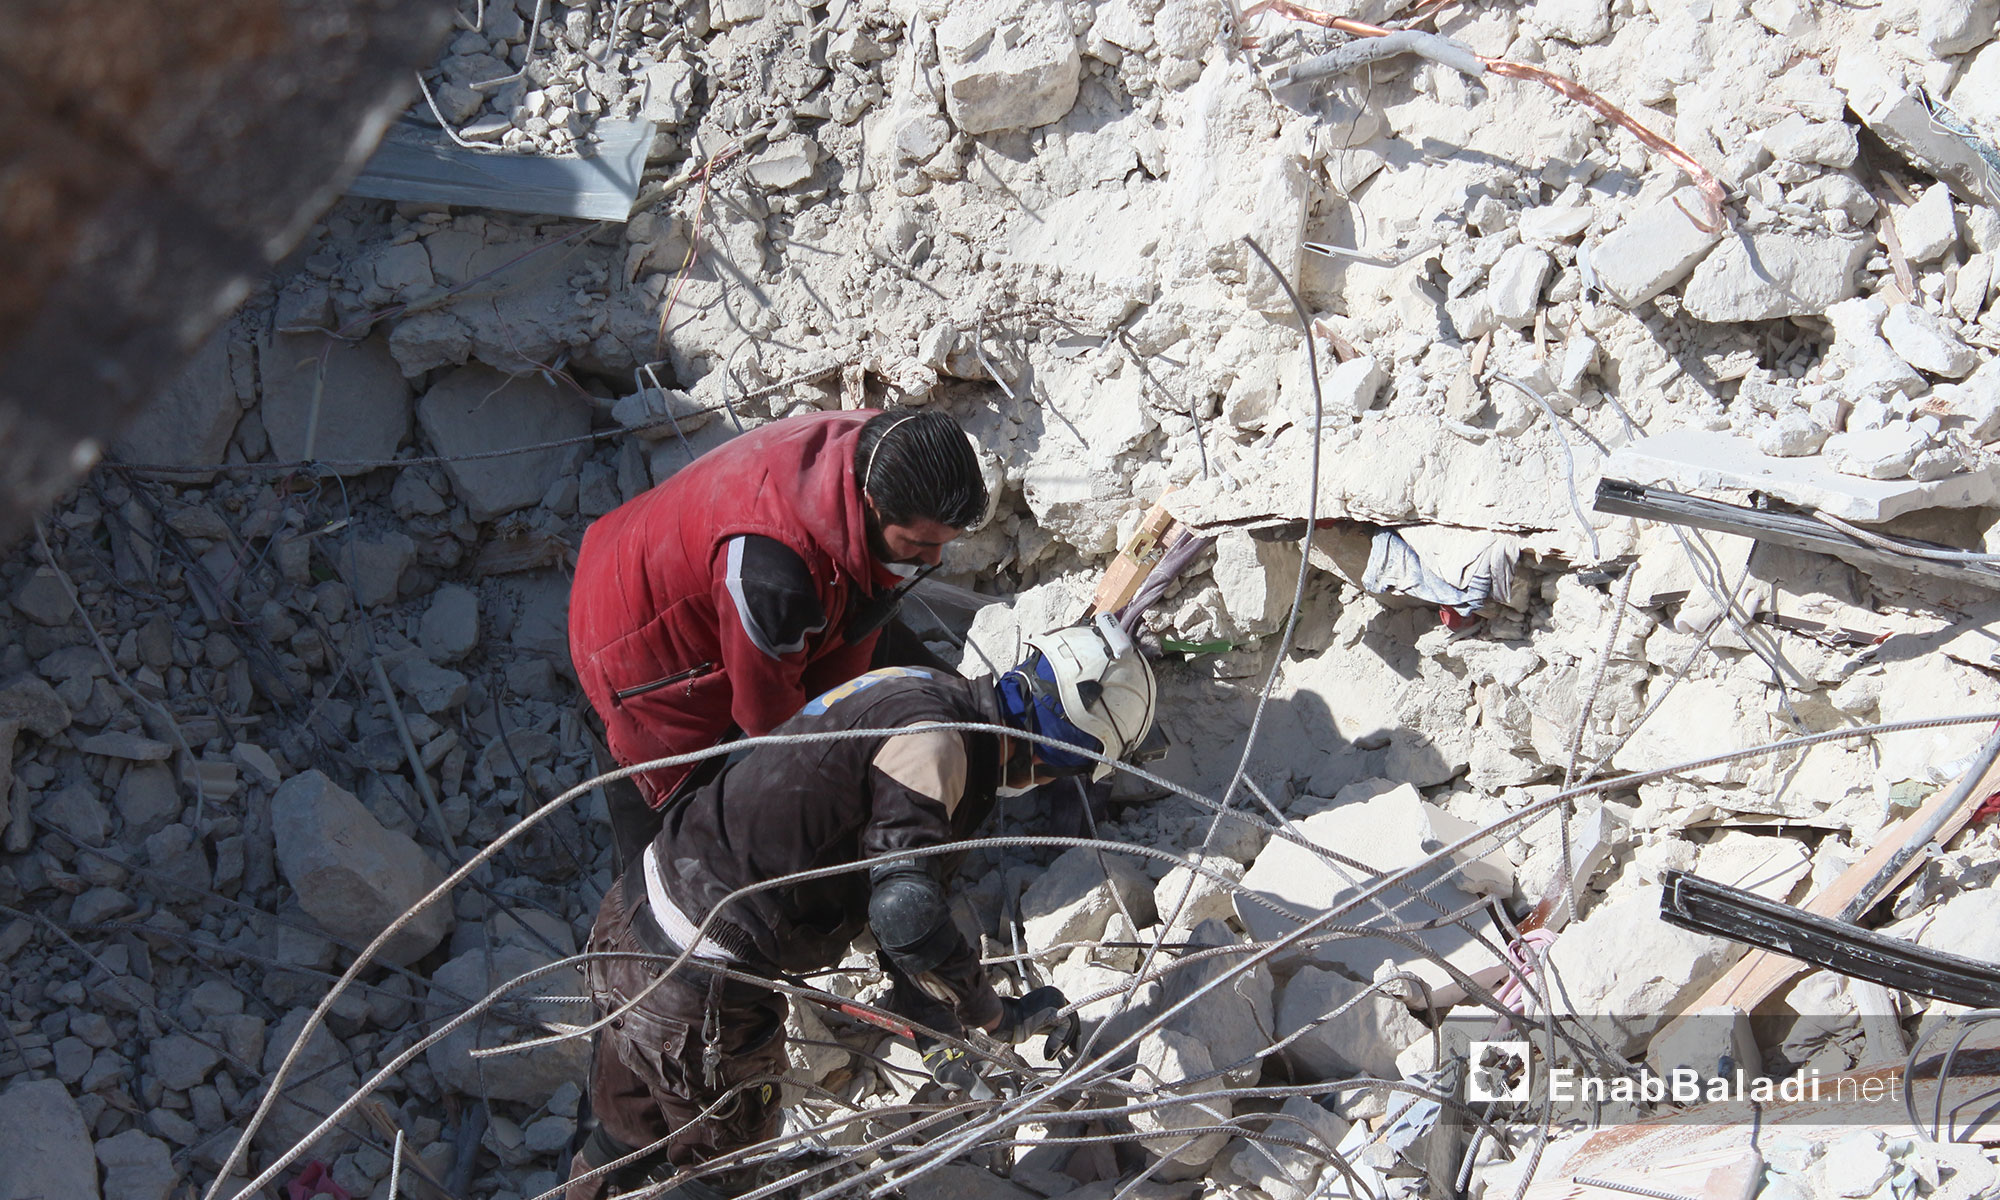 الدمار الذي لحق بالأحياء االسكنية جراء قصف الطيران الروسي والتحالف في إدلب - 7 شباط 2017 (عنب بلدي)